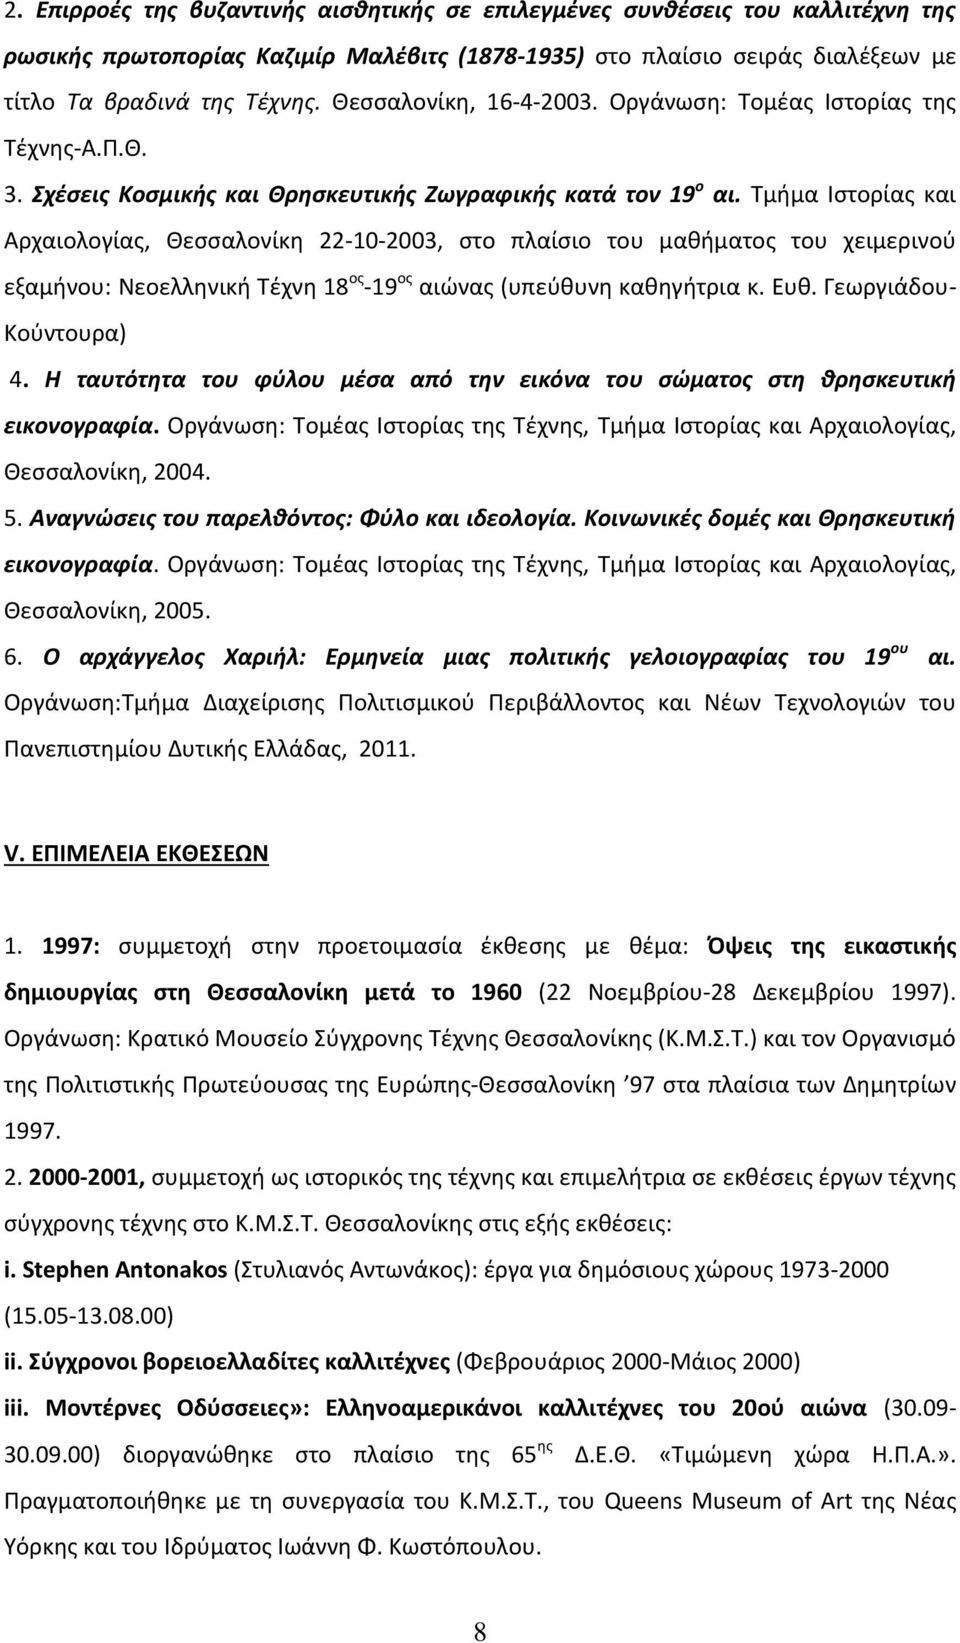 Τμήμα Ιστορίας και Αρχαιολογίας, Θεσσαλονίκη 22-10-2003, στο πλαίσιο του μαθήματος του χειμερινού εξαμήνου: Νεοελληνική Τέχνη 18 ος -19 ος αιώνας (υπεύθυνη καθηγήτρια κ. Ευθ. Γεωργιάδου- Κούντουρα) 4.